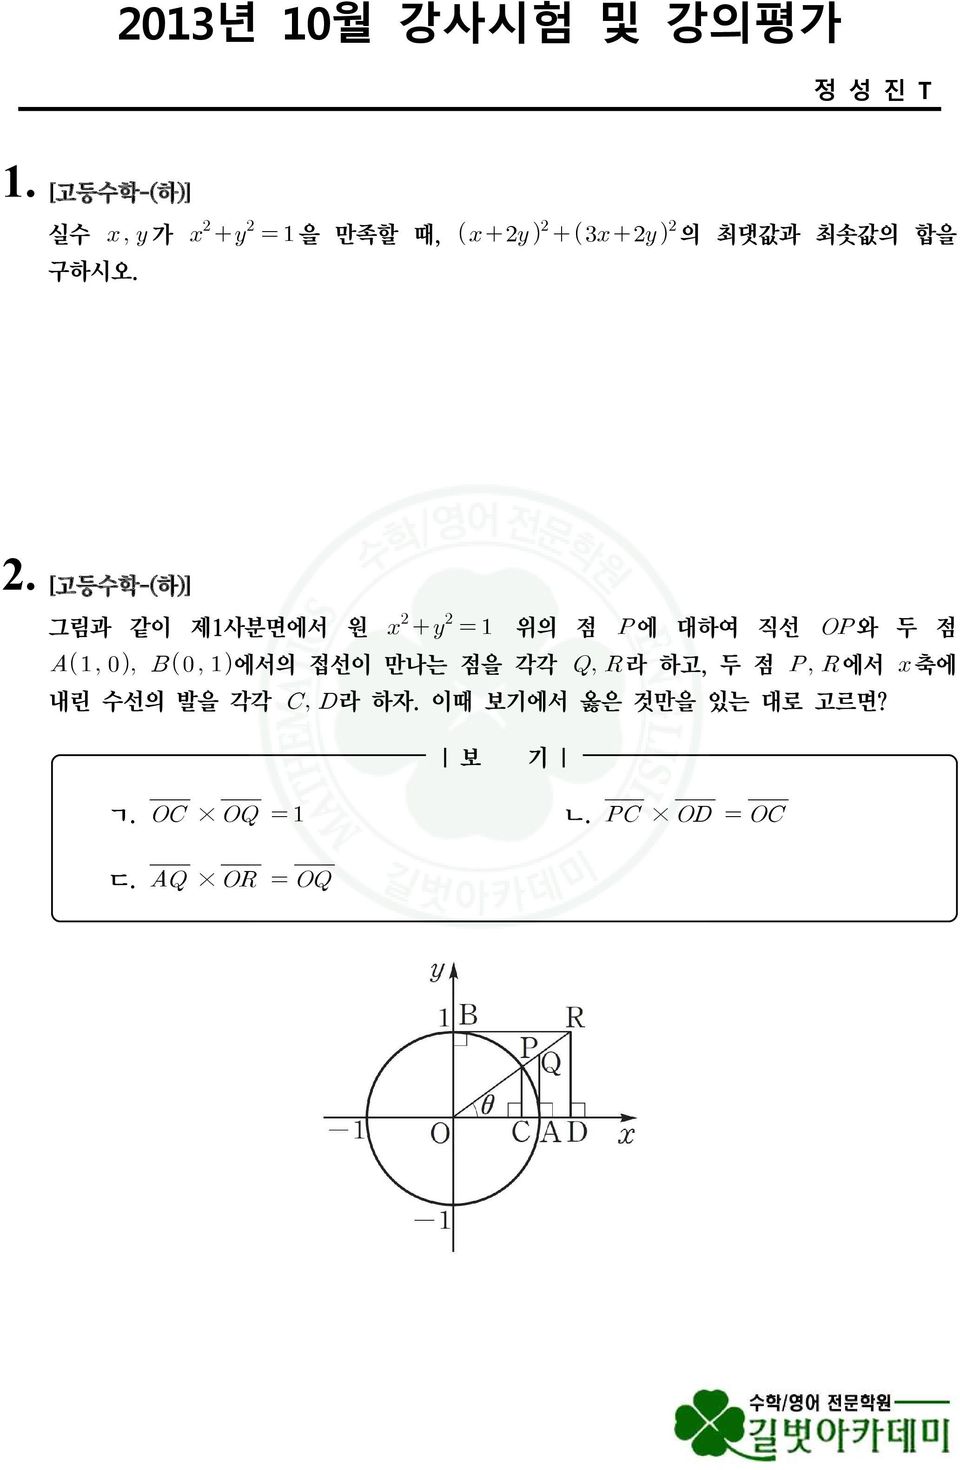 [고등수학-(하)] 그림과 같이 제1사분면에서 원 위의 점 에 대하여 직선 와 두 점